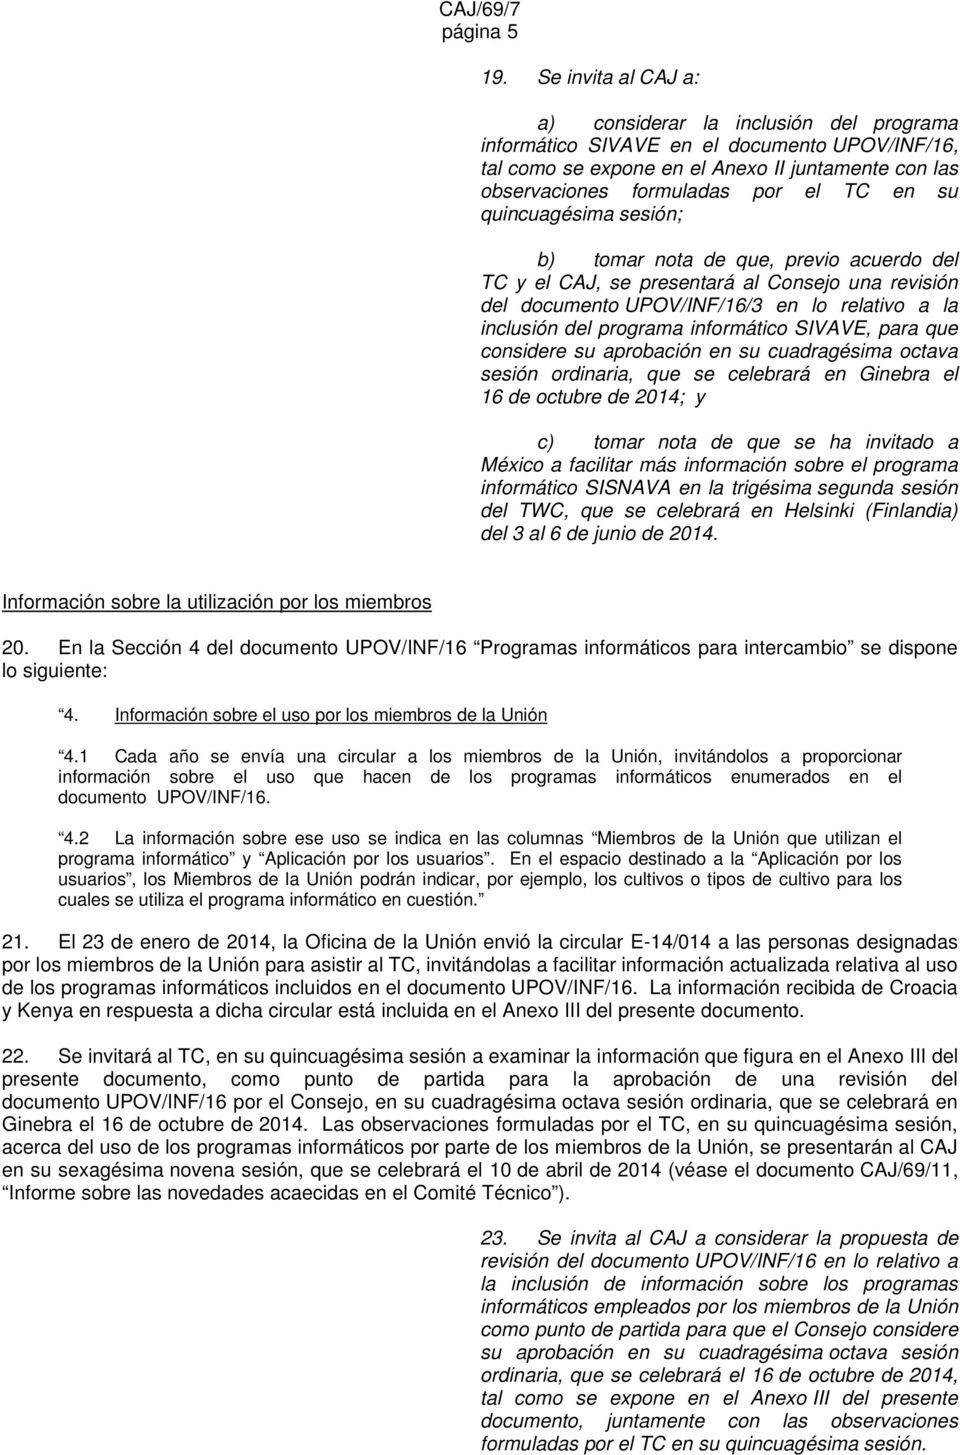 quincuagésima sesión; b) tomar nota de que, previo acuerdo del TC y el CAJ, se presentará al Consejo una revisión del documento UPOV/INF/16/3 en lo relativo a la inclusión del informático SIVAVE,